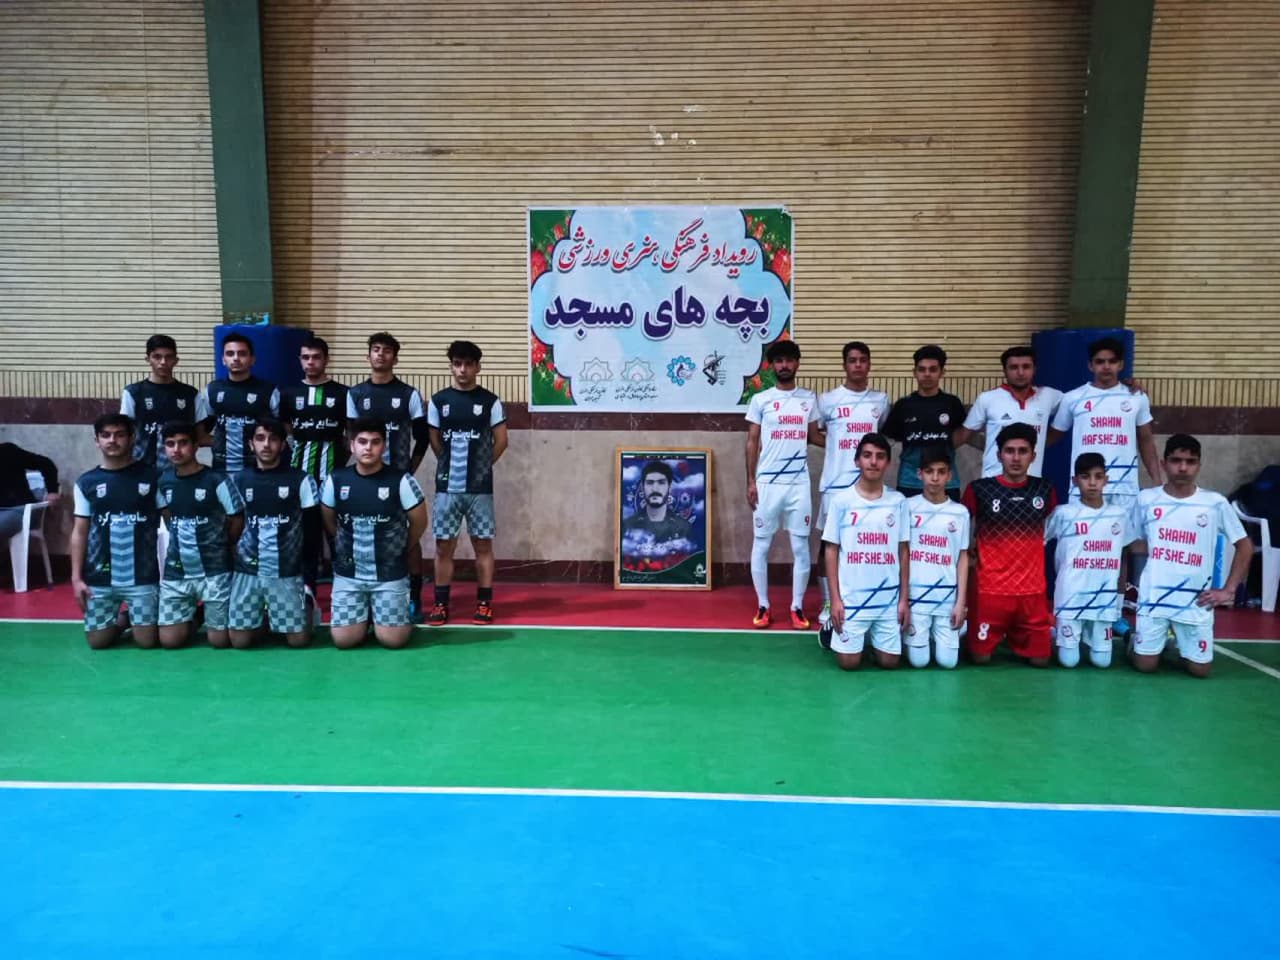 برگزاري مسابقات فوتسال رويداد فرهنگي هنري و ورزشي بچه هاي مسجد به همت کانون شهيد چمران